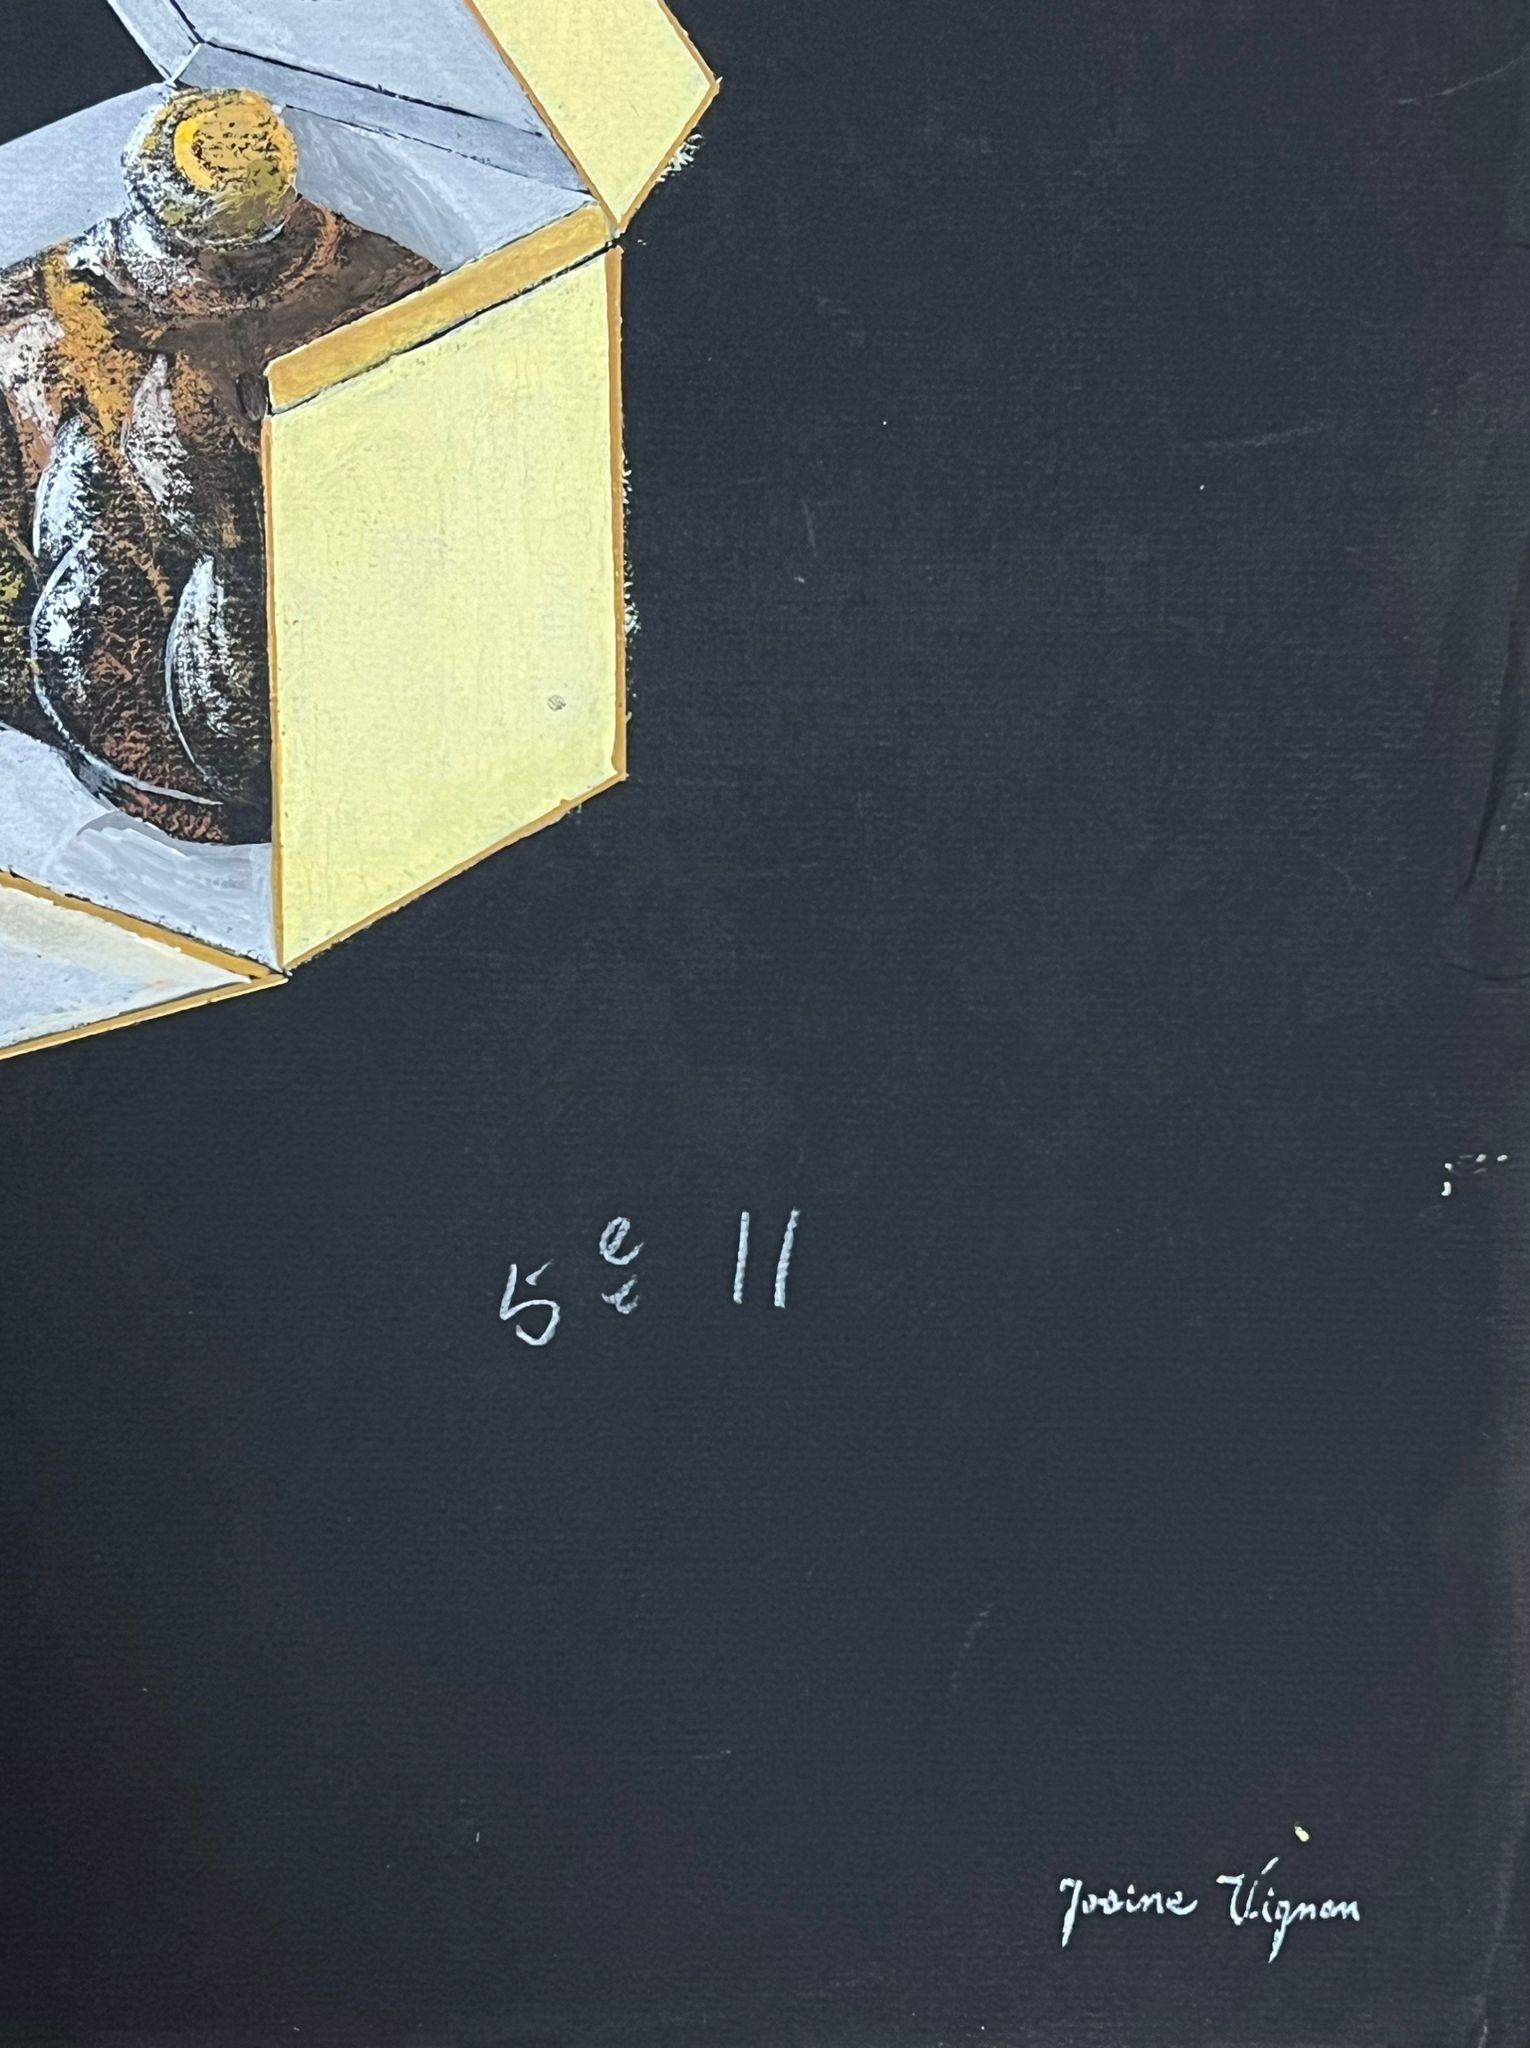 Französisches Glasornament aus der Mitte des Jahrhunderts in gelbem Schachtel, Gouache-Gemälde – Painting von Josine Vignon